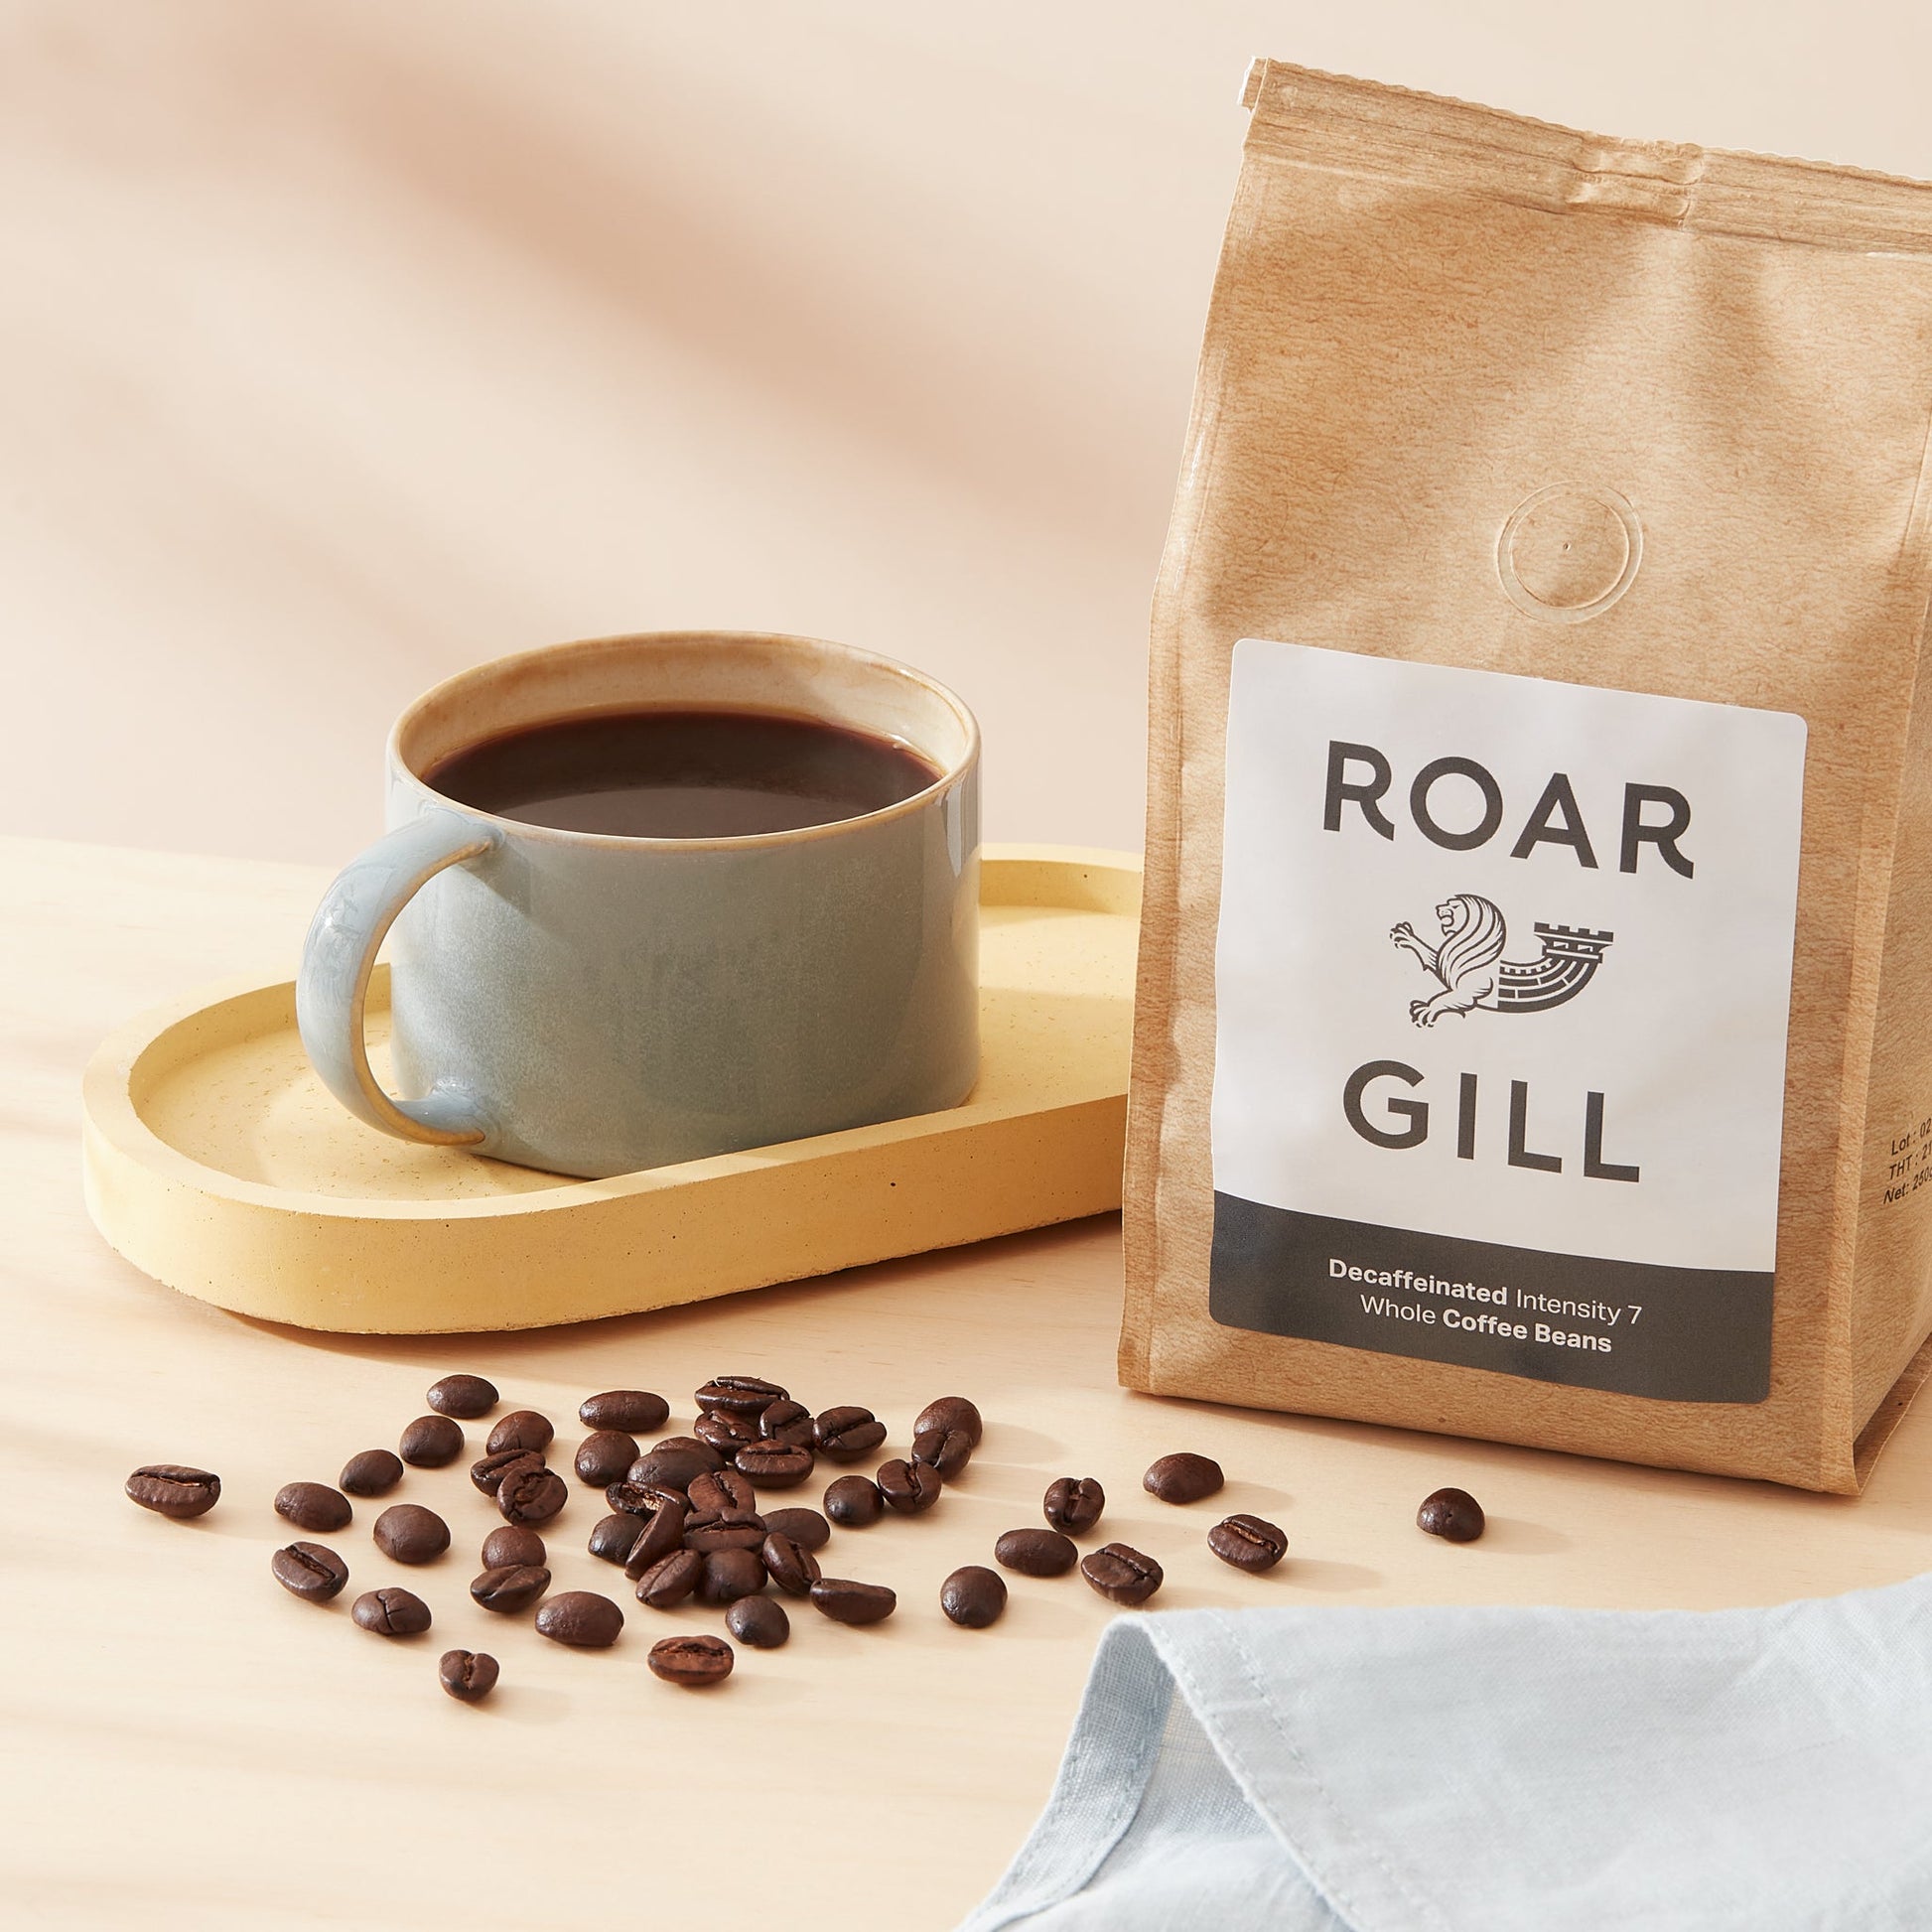 Medium Roast Decaf Whole Bean Coffee by Roar Gill